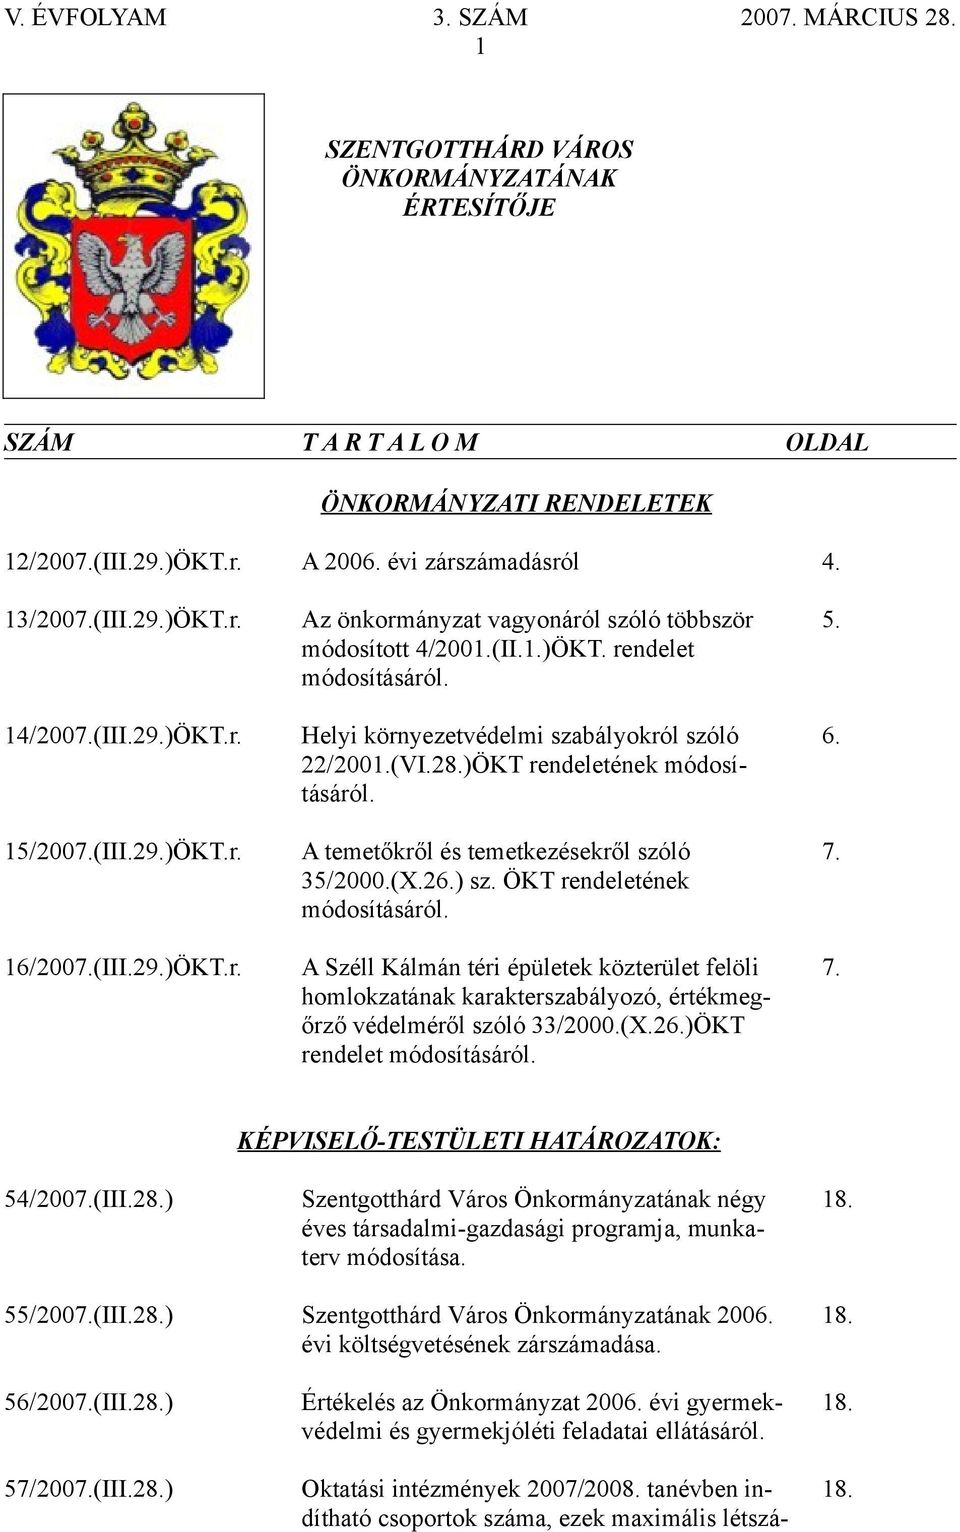 (VI.28.)ÖKT rendeletének módosításáról. 6. 15/2007.(III.29.)ÖKT.r. A temetőkről és temetkezésekről szóló 35/2000.(X.26.) sz. ÖKT rendeletének módosításáról. 7. 16/2007.(III.29.)ÖKT.r. A Széll Kálmán téri épületek közterület felöli homlokztánk krkterszbályozó, értékmegőrző védelméről szóló 33/2000.